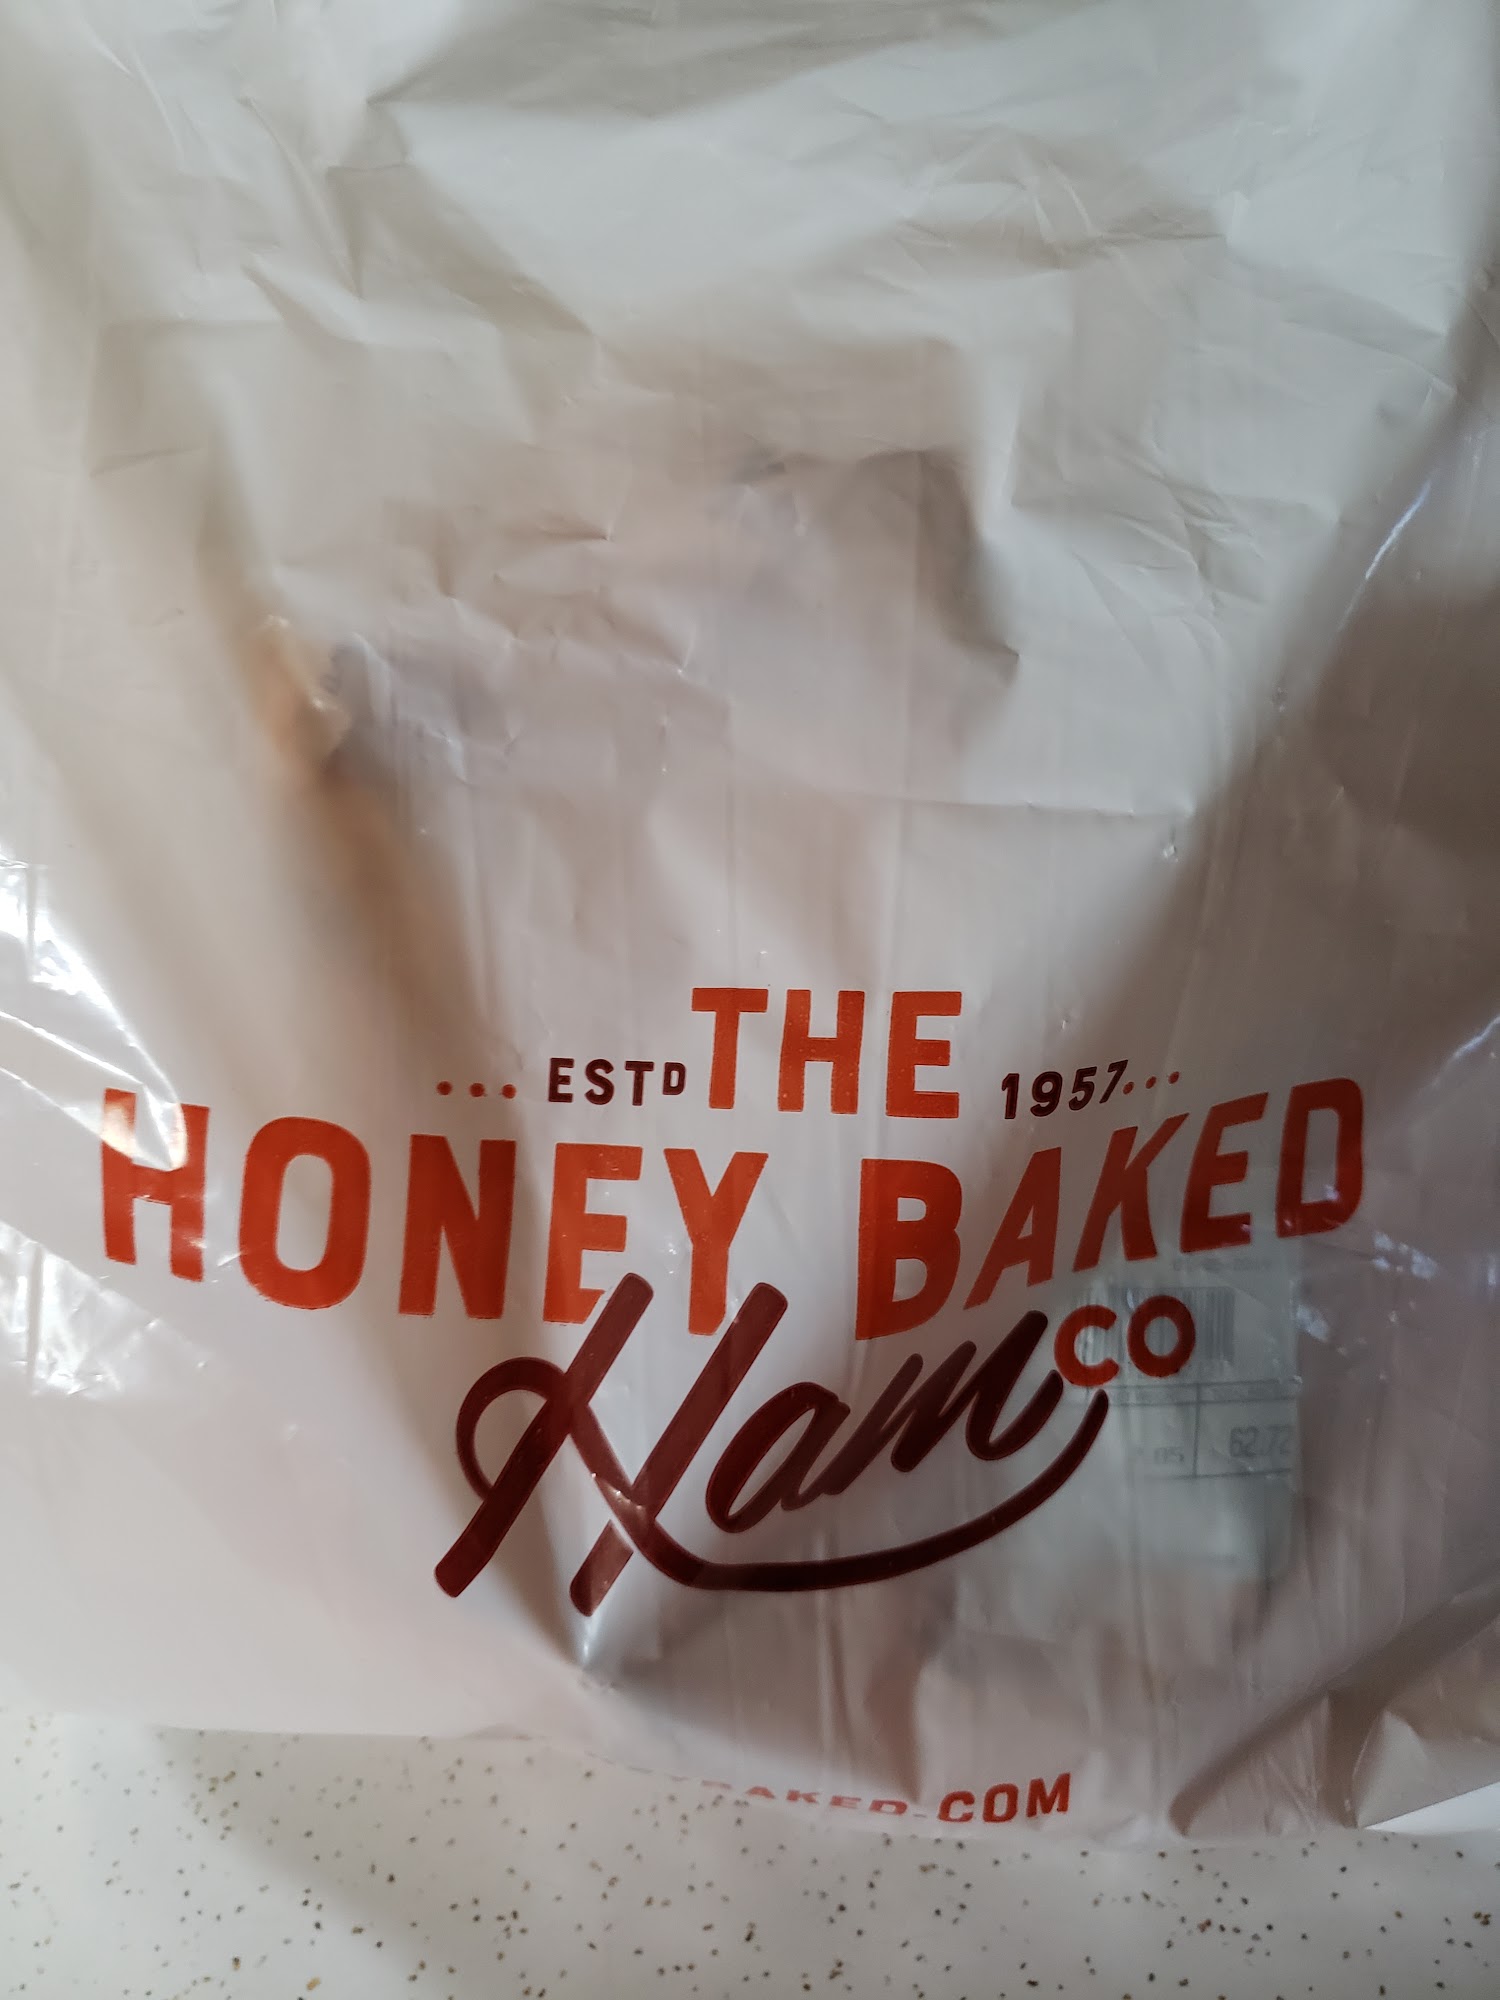 The HoneyBaked Ham Company and Cafe